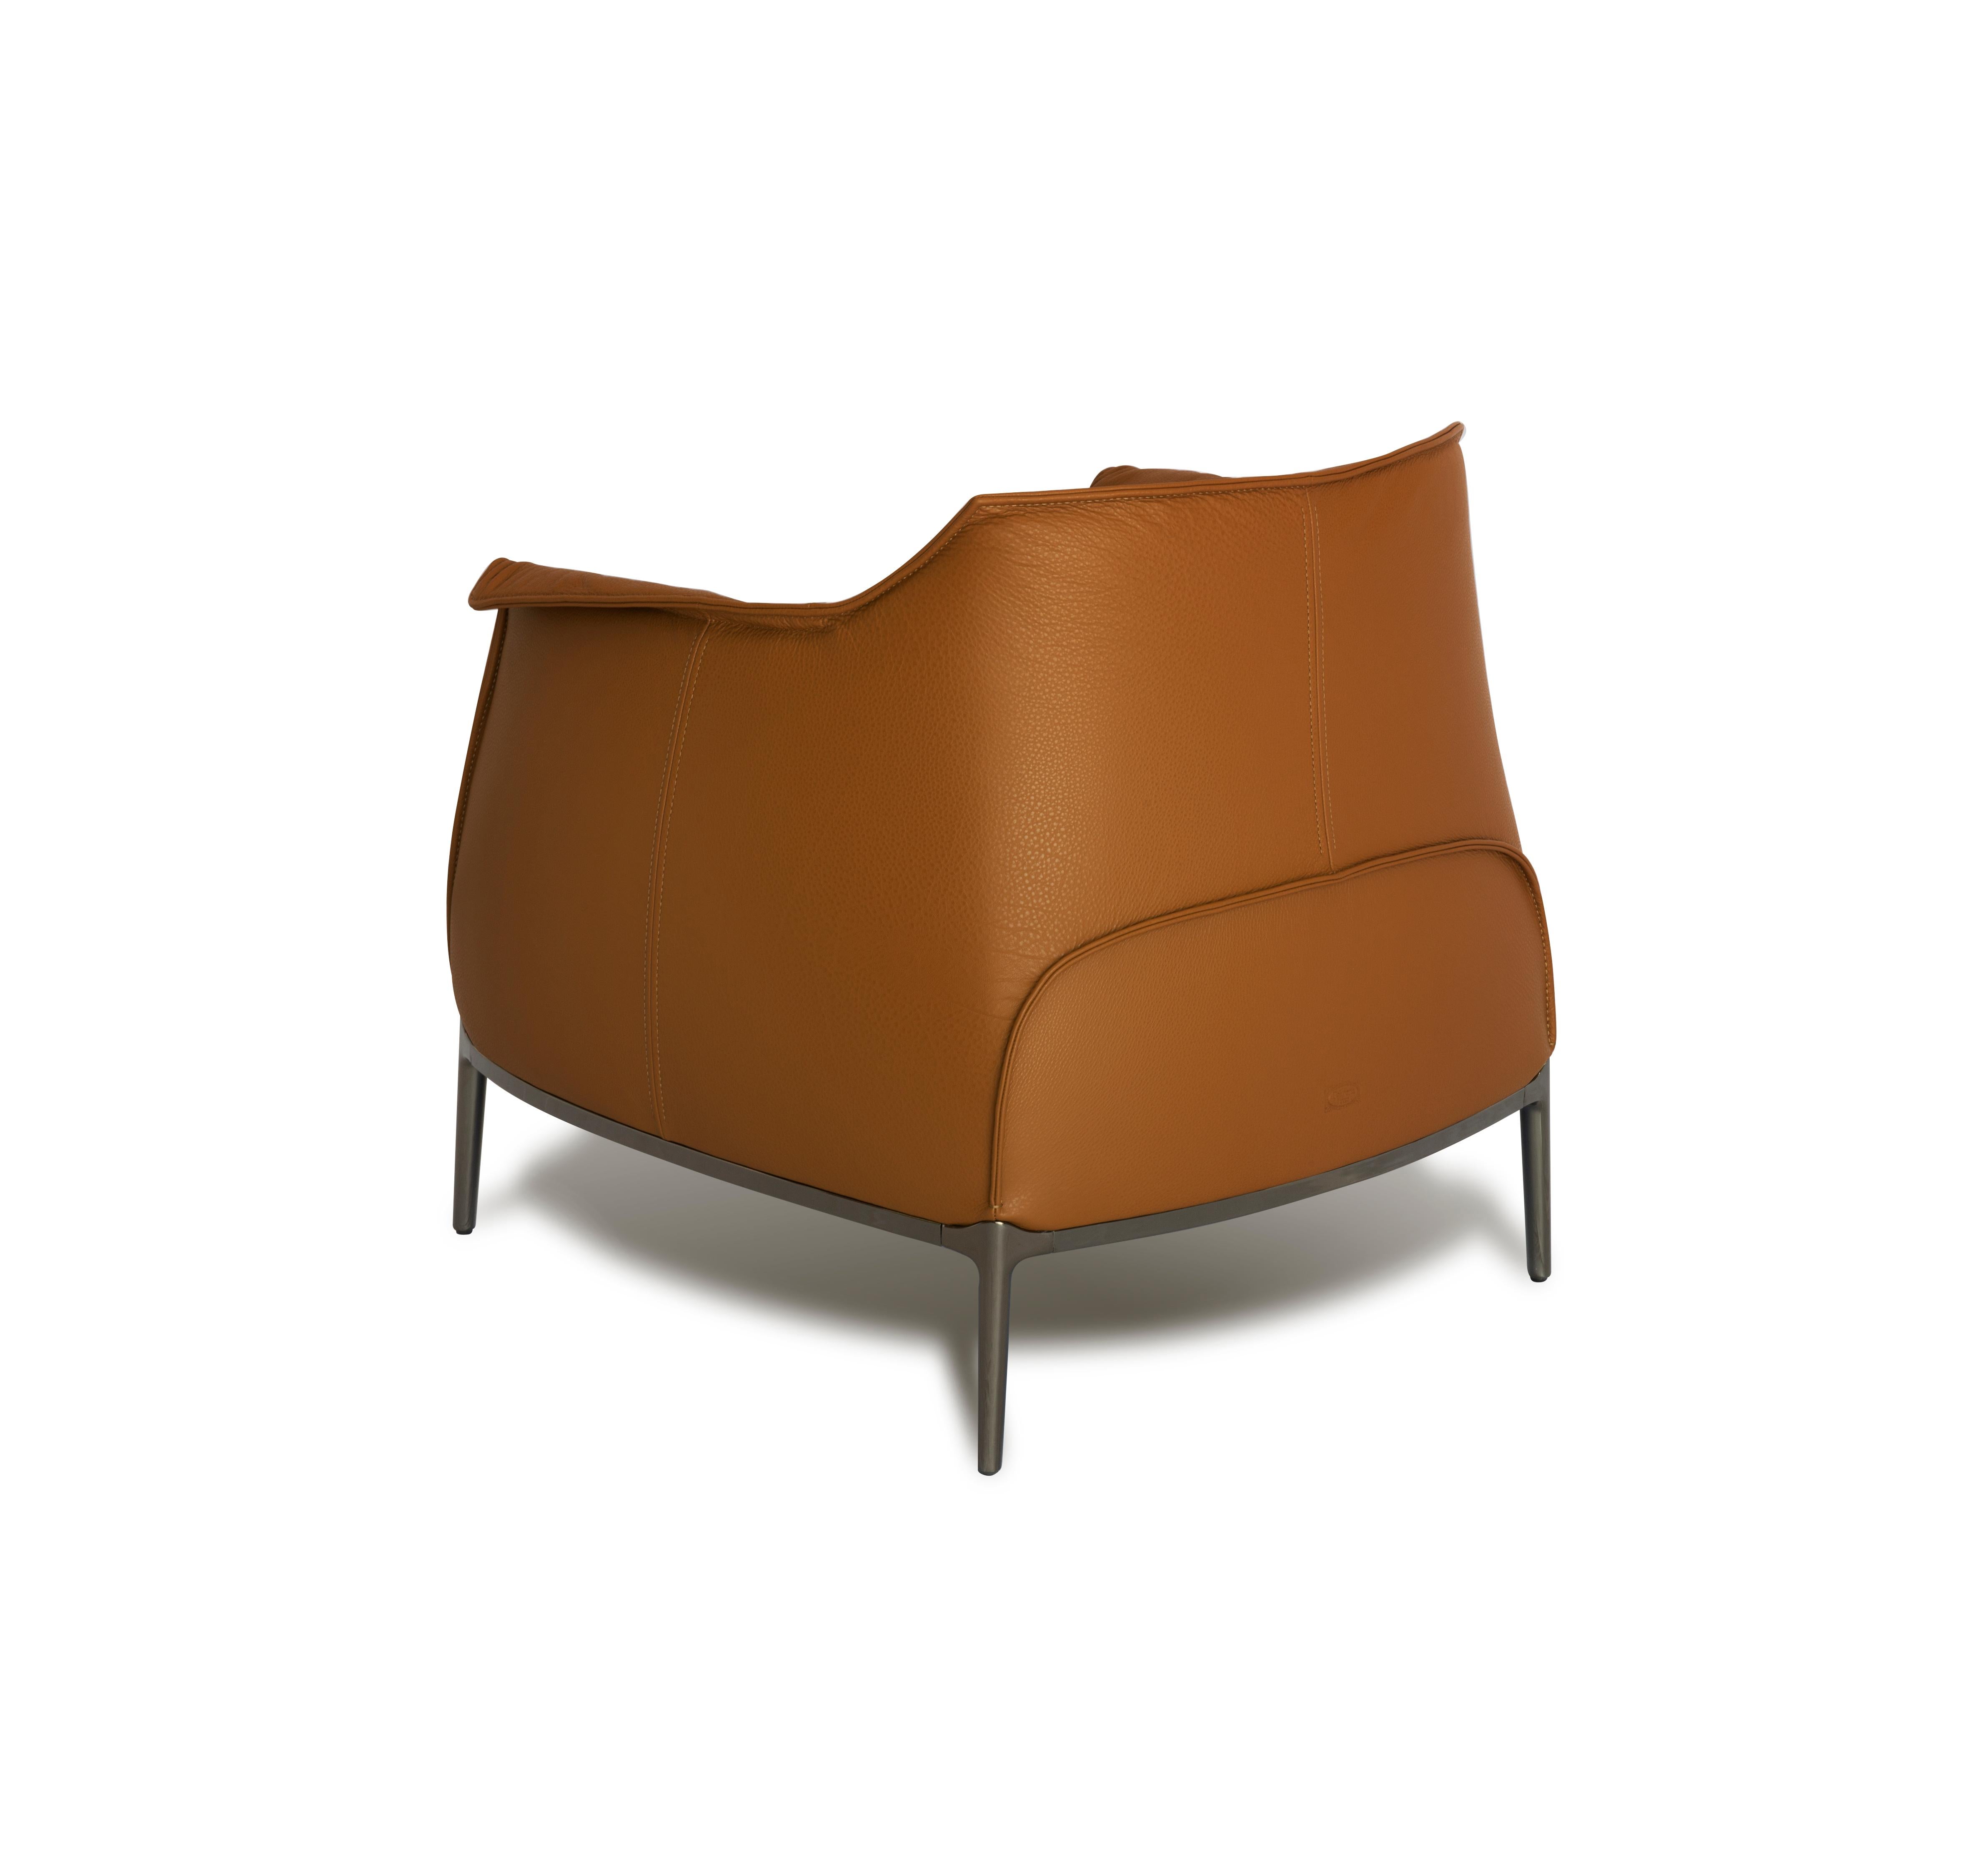 Der Archibald von Jean-Marie Massaud ist die perfekte Kombination aus Substanz und Form. Die Sessel und Poufs bieten ein komfortables und umhüllendes Design, das ideal für Meditation und Entspannung ist. Die Breite und Tiefe des Sitzes werden durch